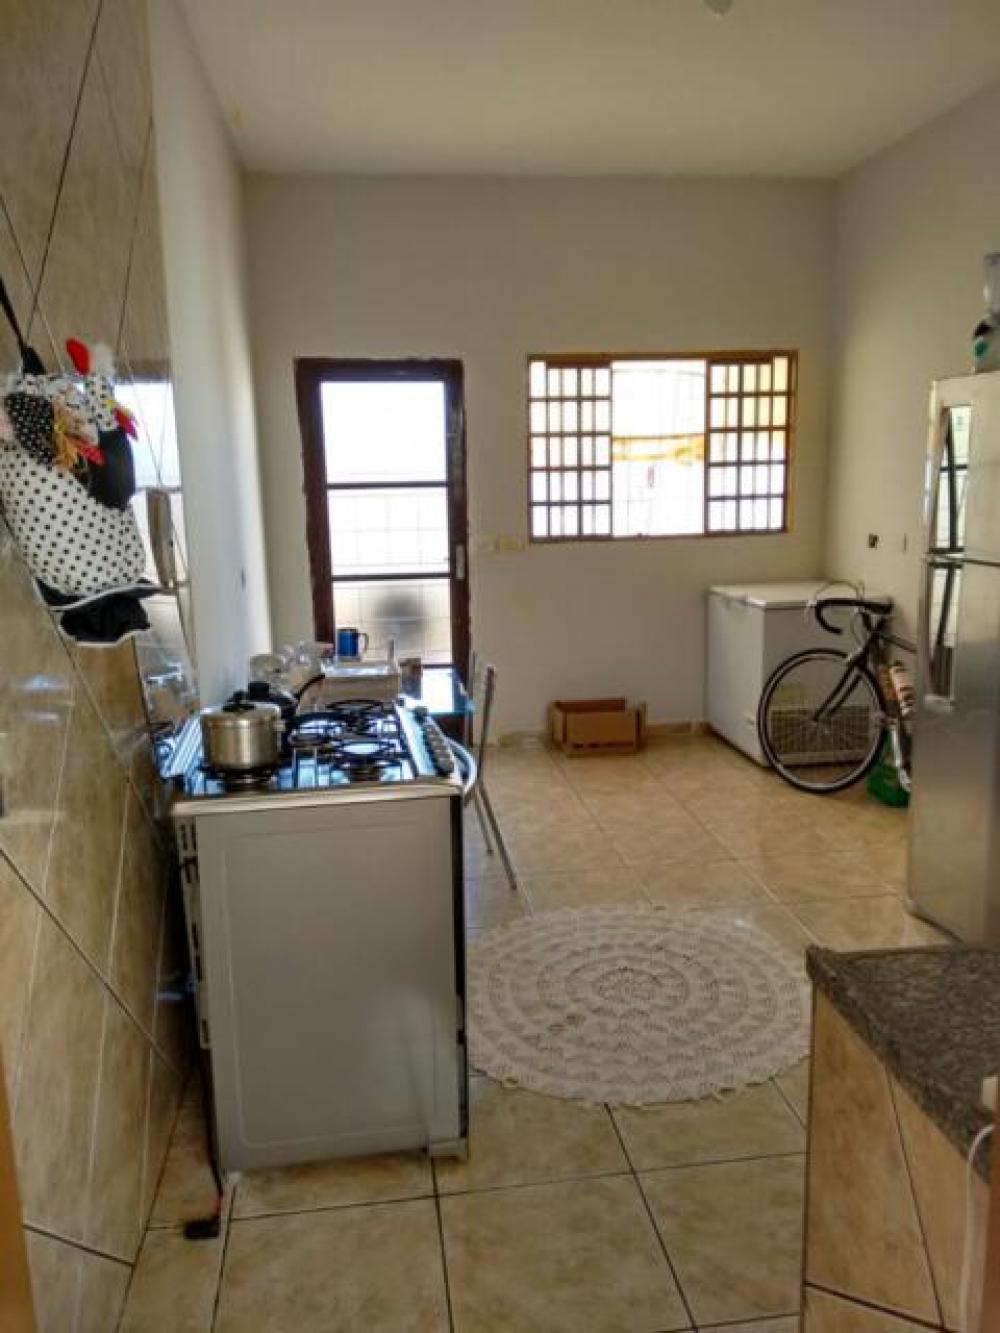 Comprar Casa / Padrão em Mirassol apenas R$ 280.000,00 - Foto 15